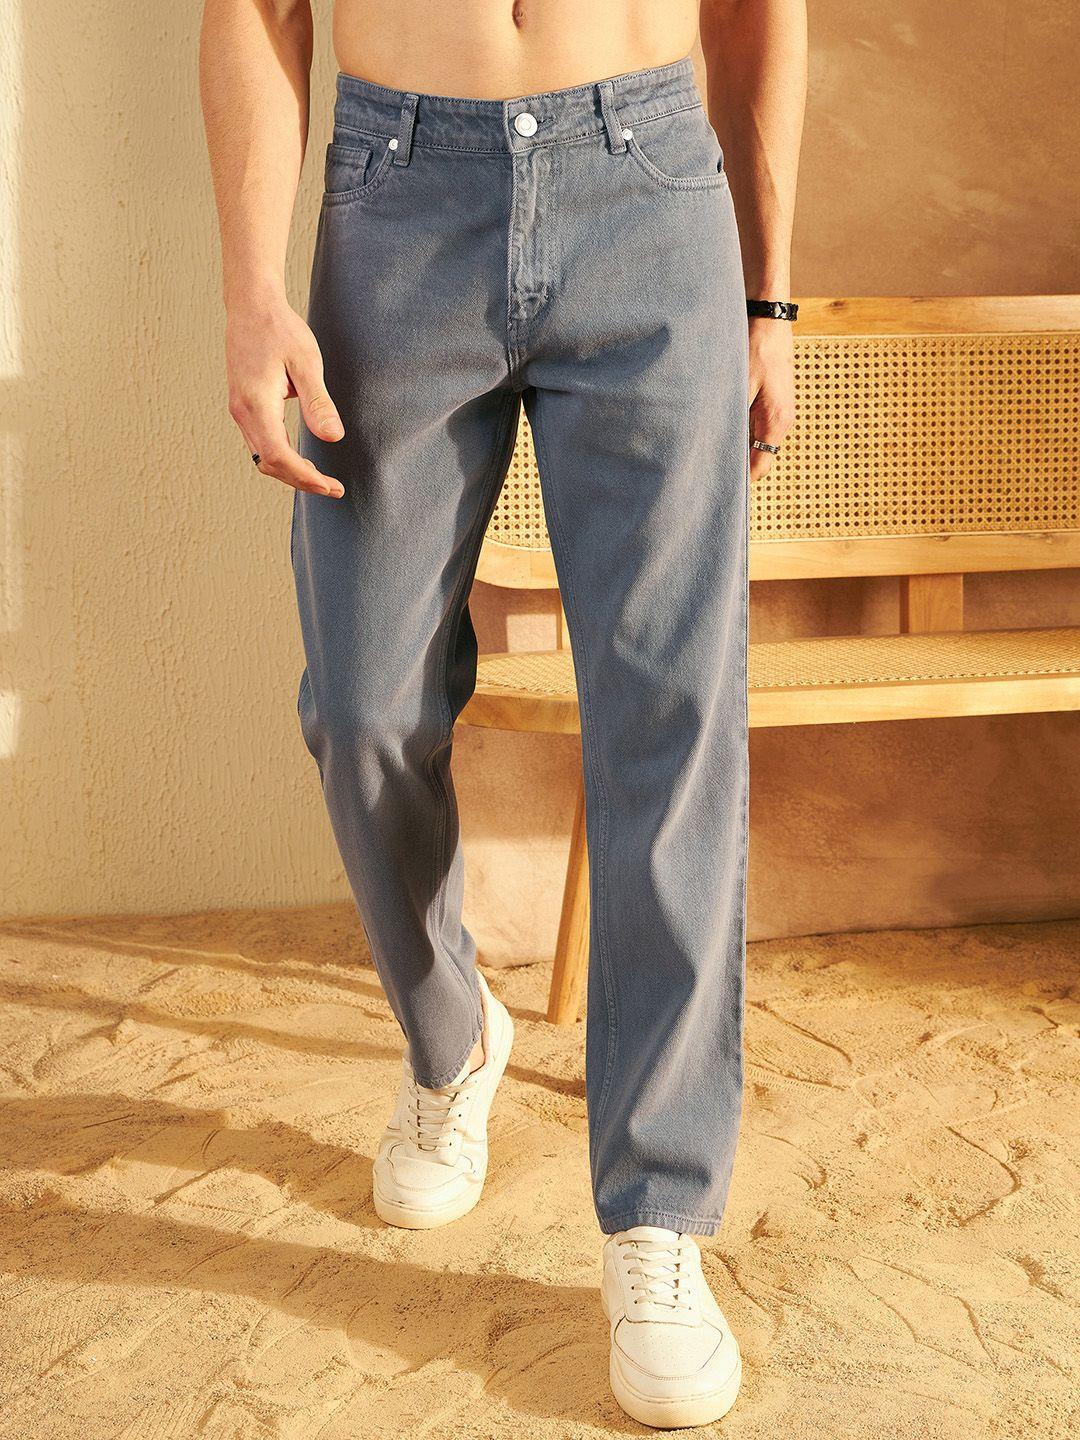 dennison-men-comfort-baggy-fit-non-stretchable-cotton-jeans